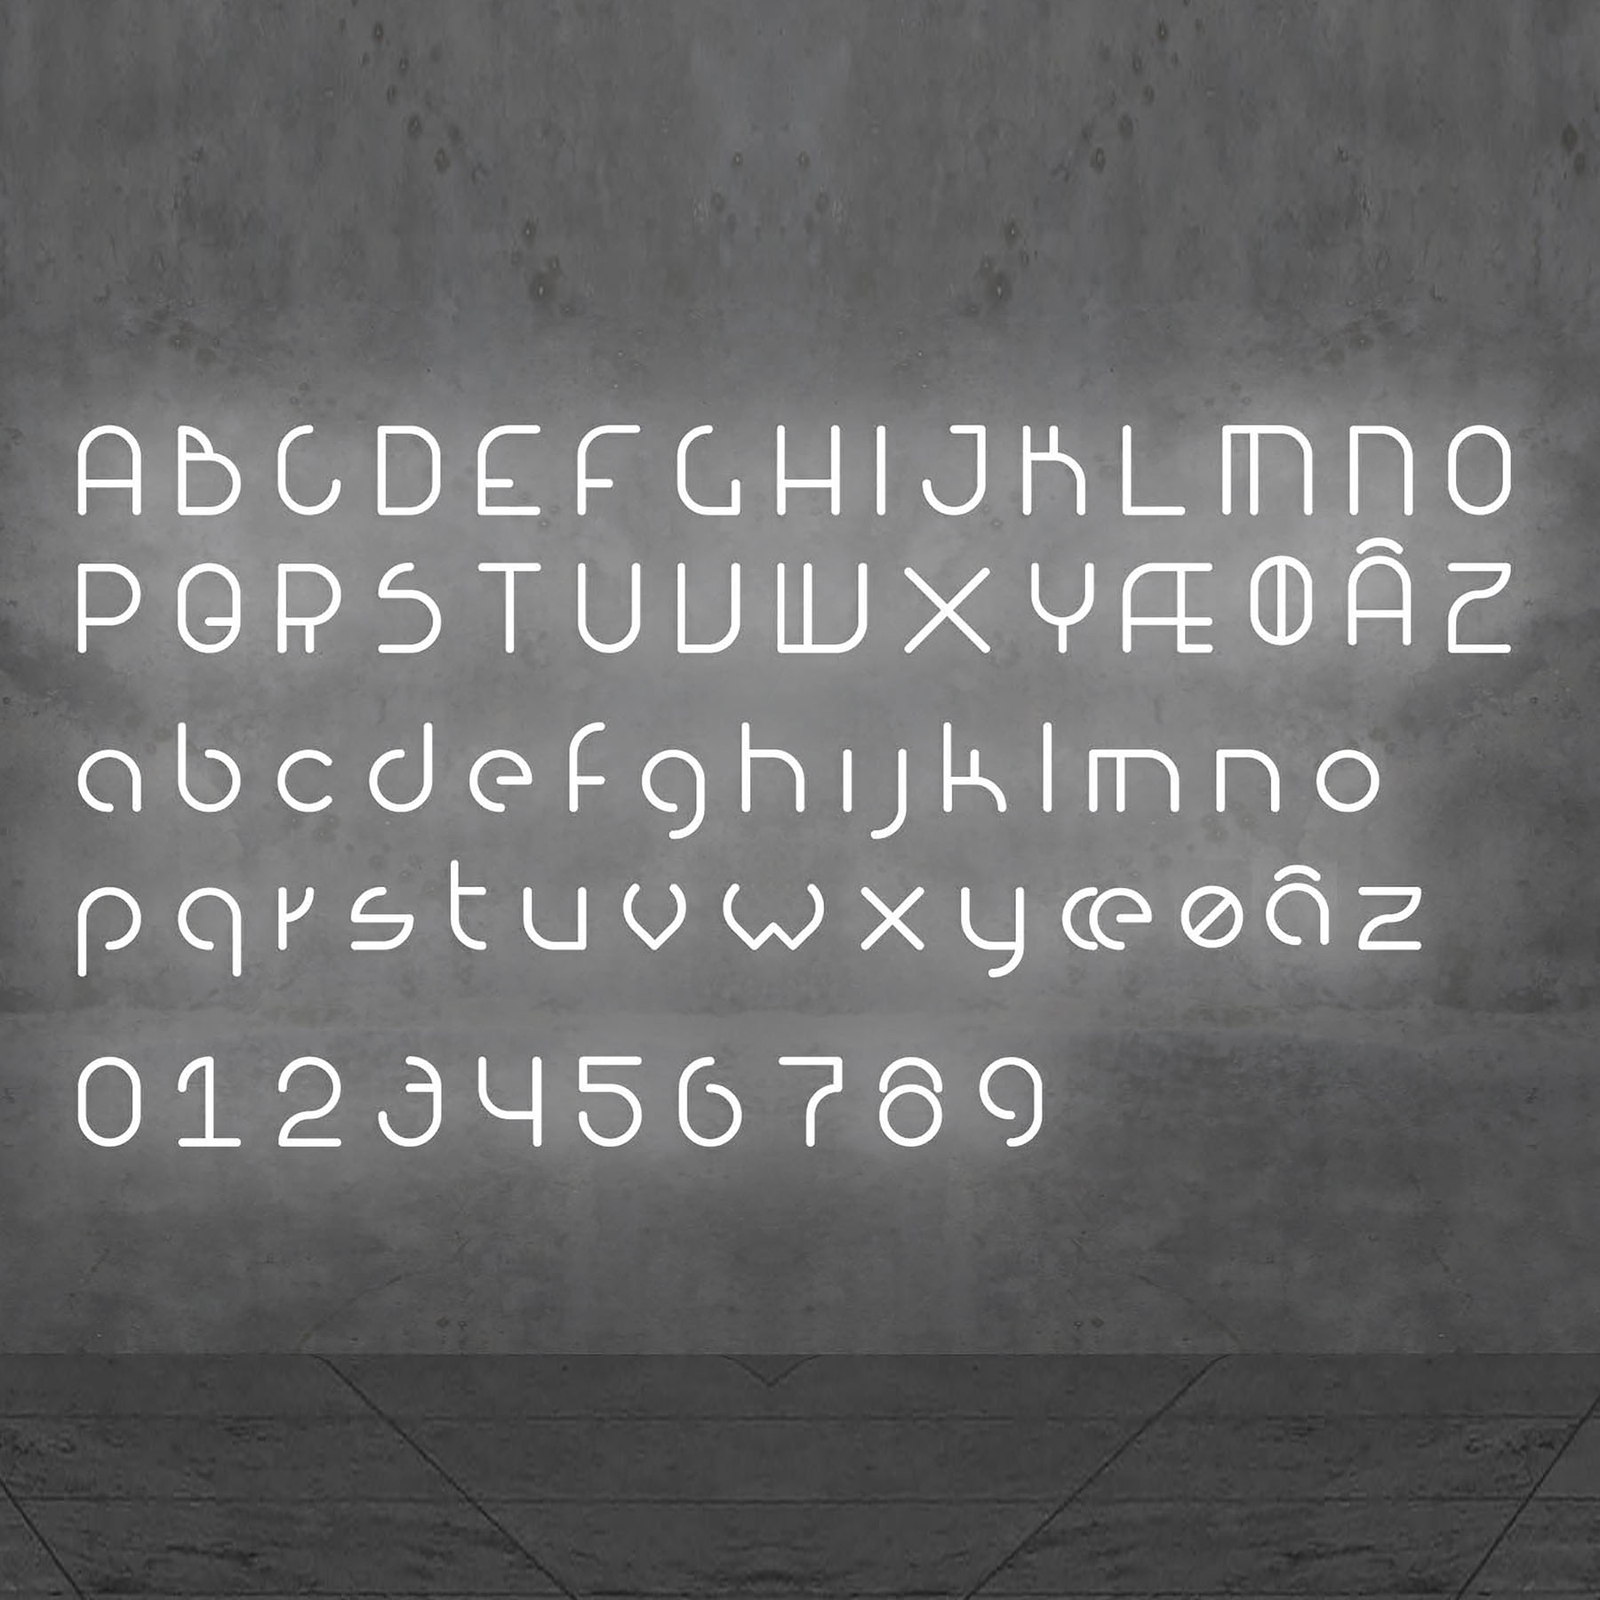 Artemide Alphabet of Light væg, lille bogstav r